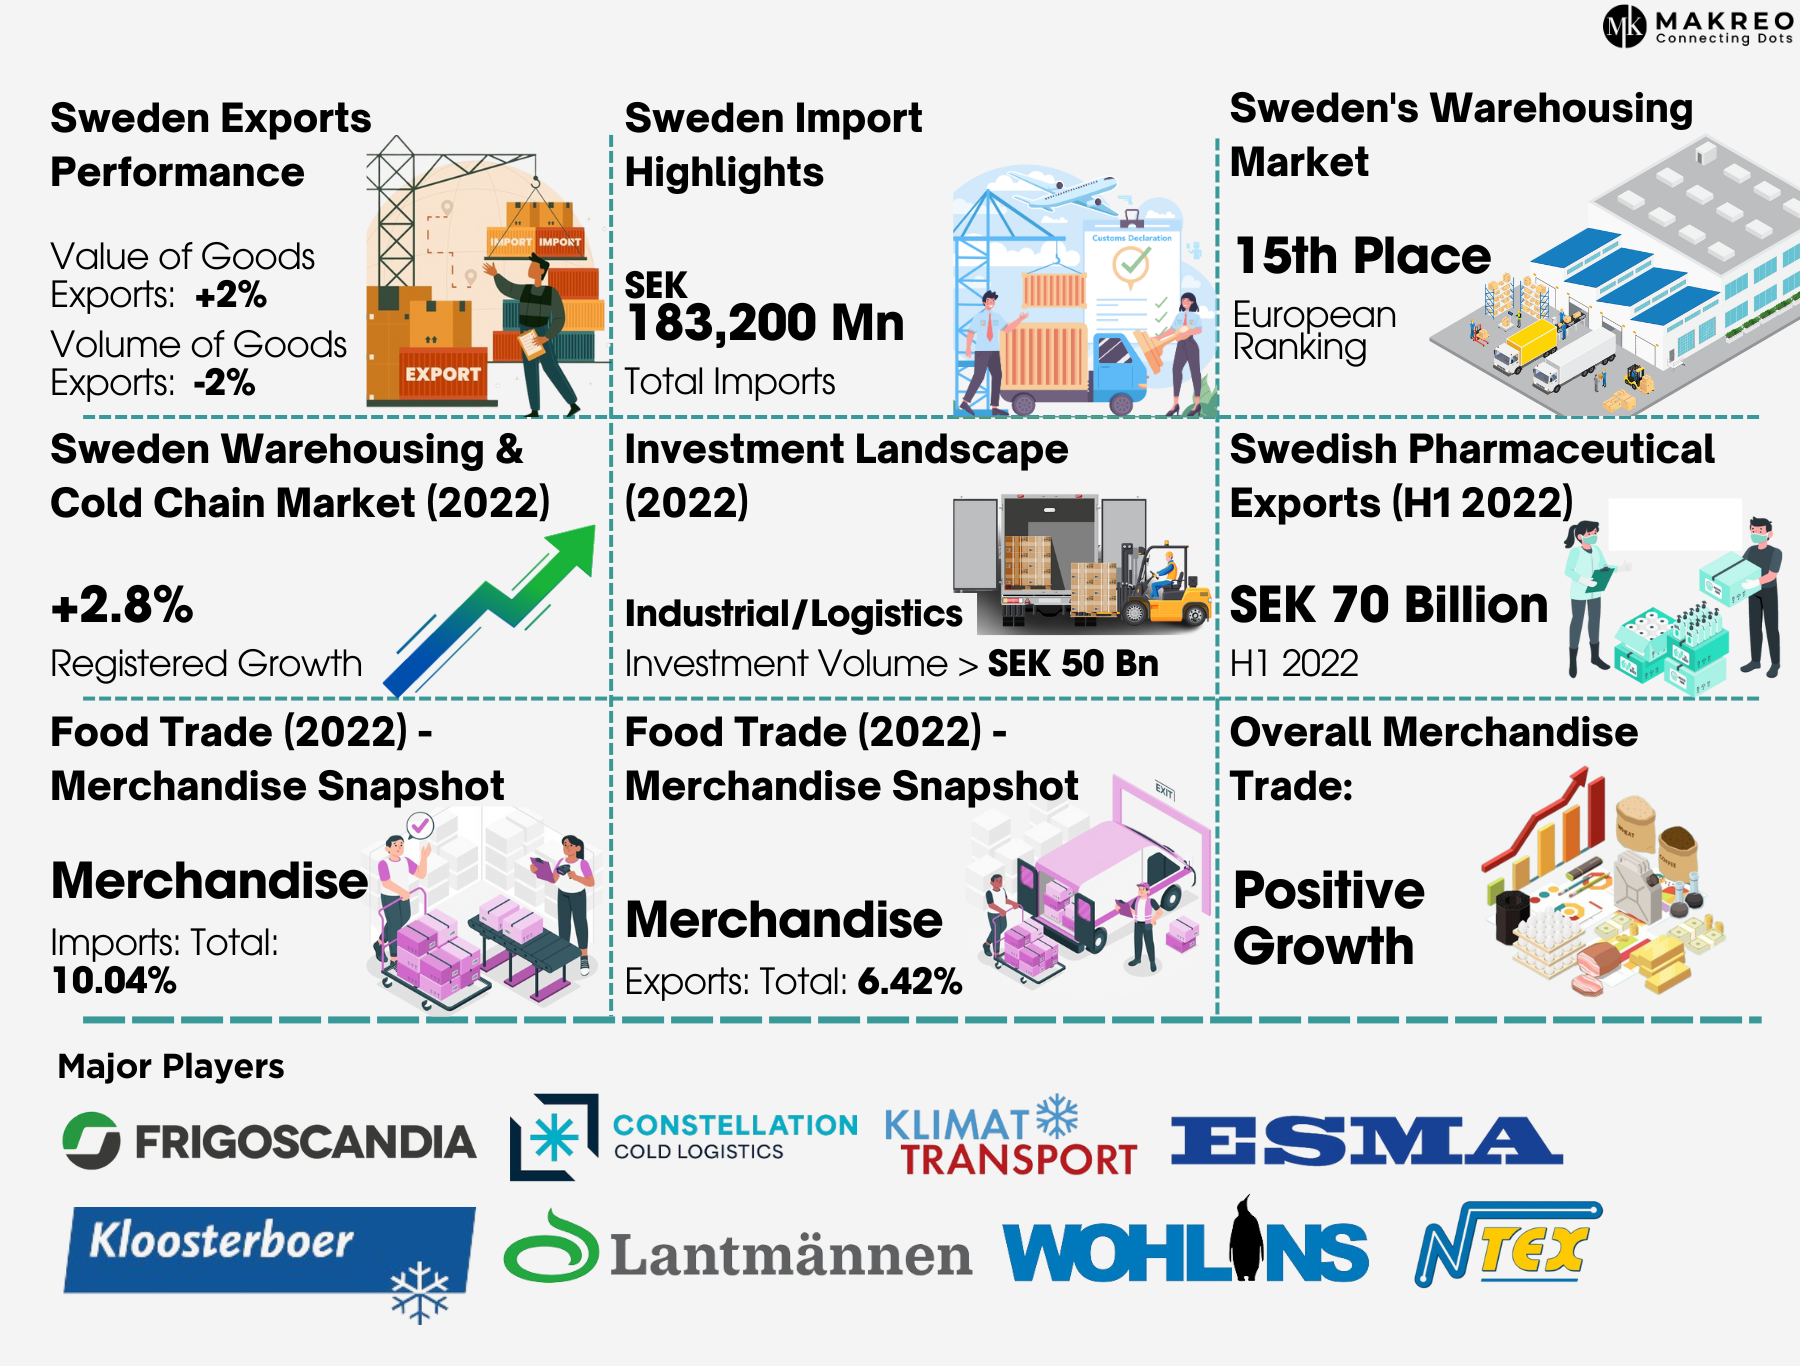 Sweden's Warehousing & Cold Chain Market